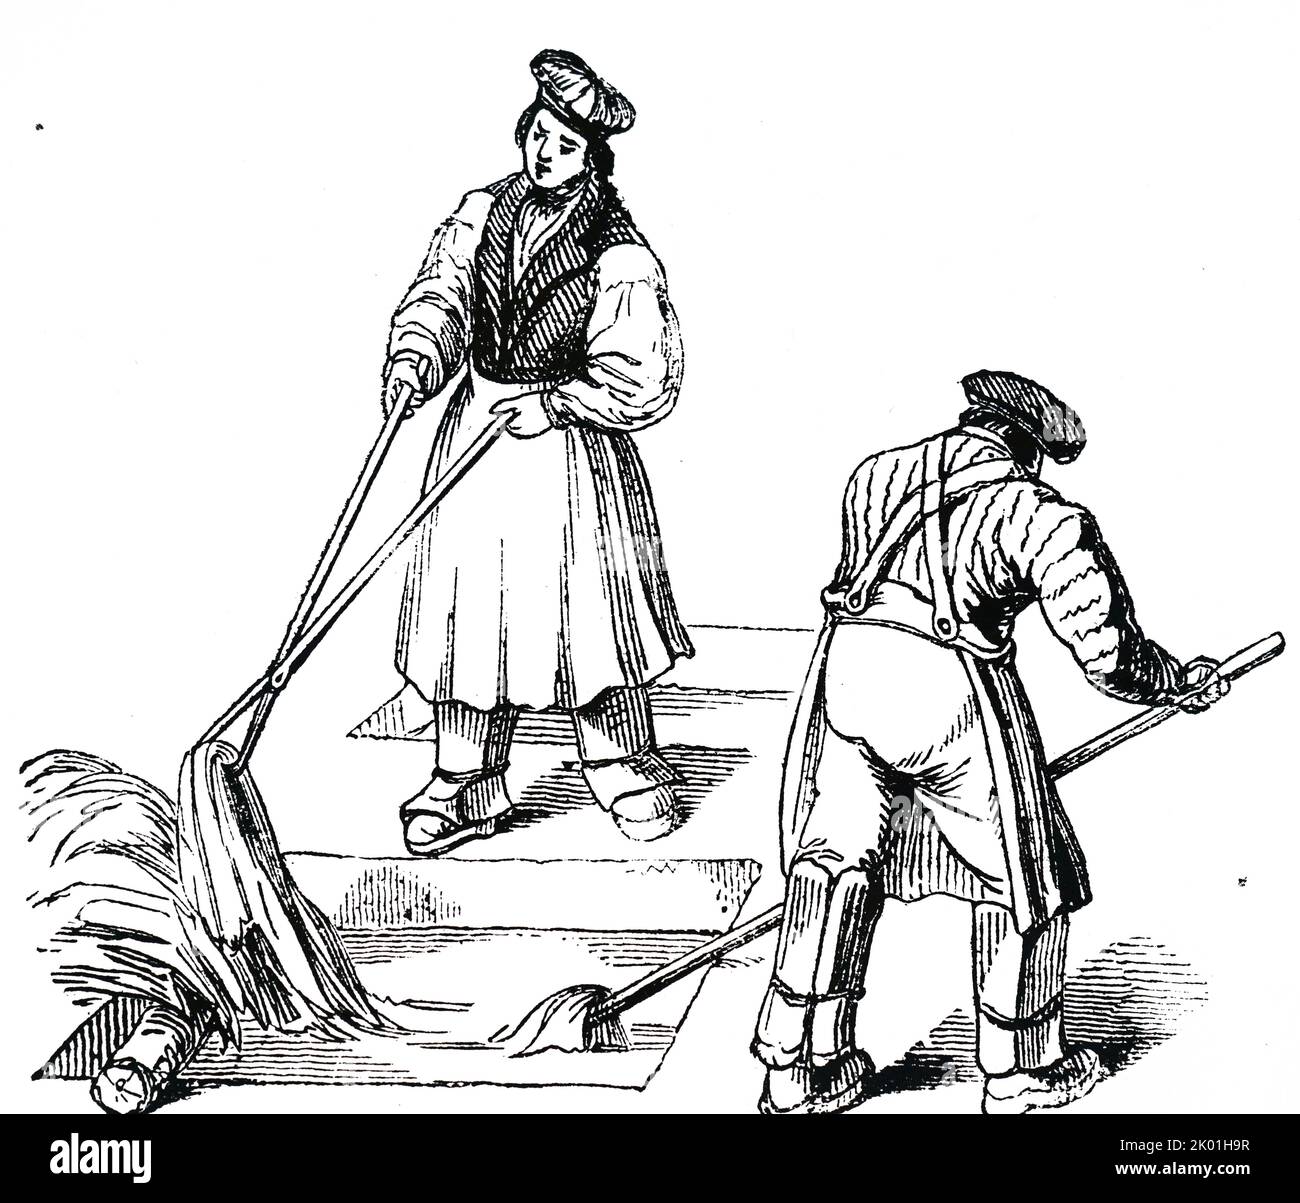 Ziehschalen werden gezeichnet. Die Häute wurden fünf Wochen lang in Kalkgruben eingetaucht und regelmäßig entfernt und ersetzt, damit die Lösung gleichmäßig auf den Haaren der Häute wirken konnte. Aus dem Penny Magazine, London, 1842. Stockfoto